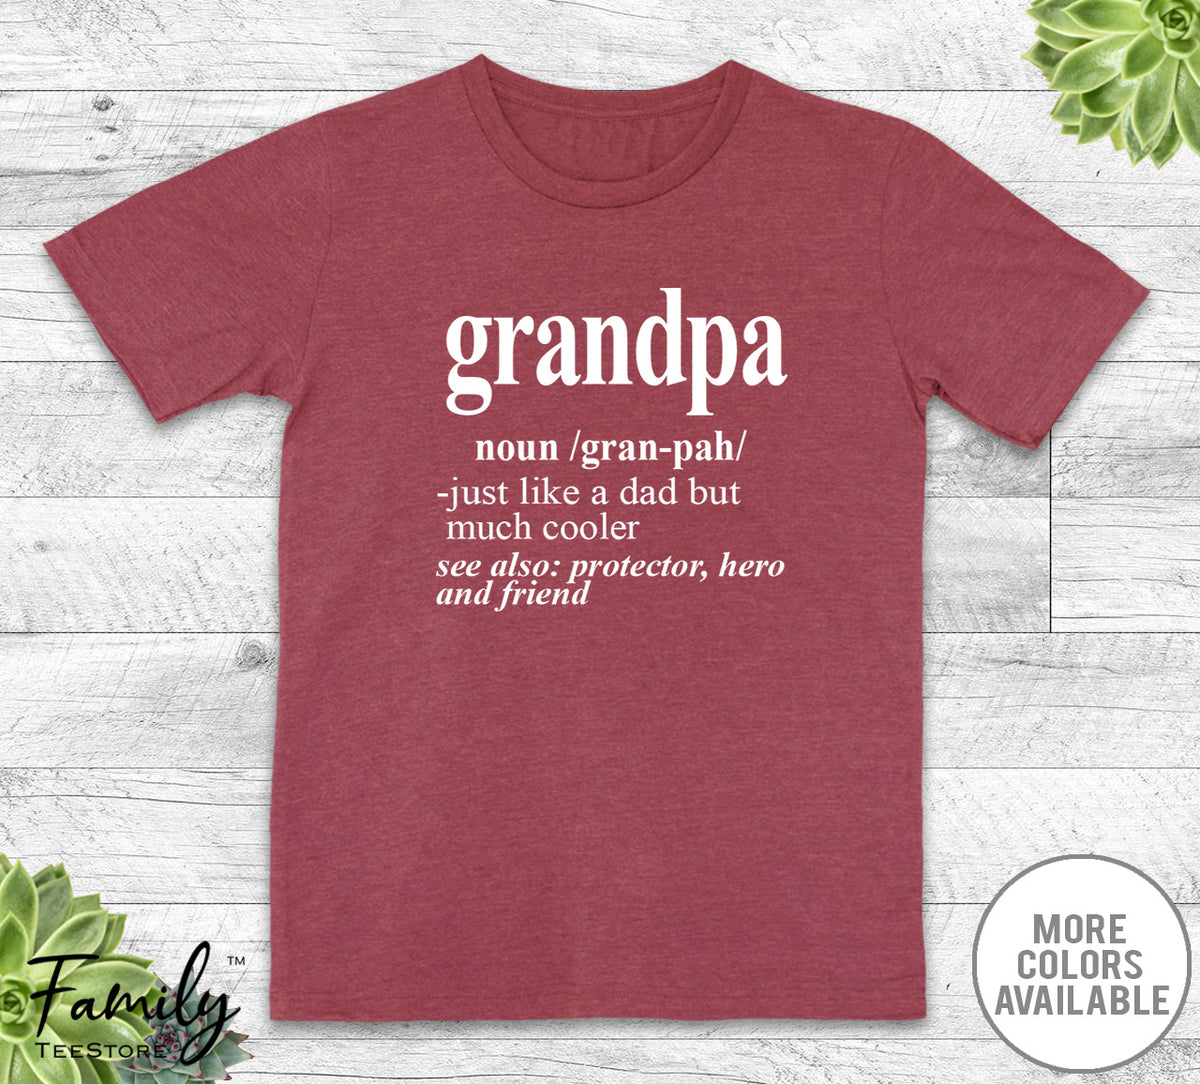 Grandpa Noun - Unisex T-shirt - Grandpa Shirt - Grandpa Gift